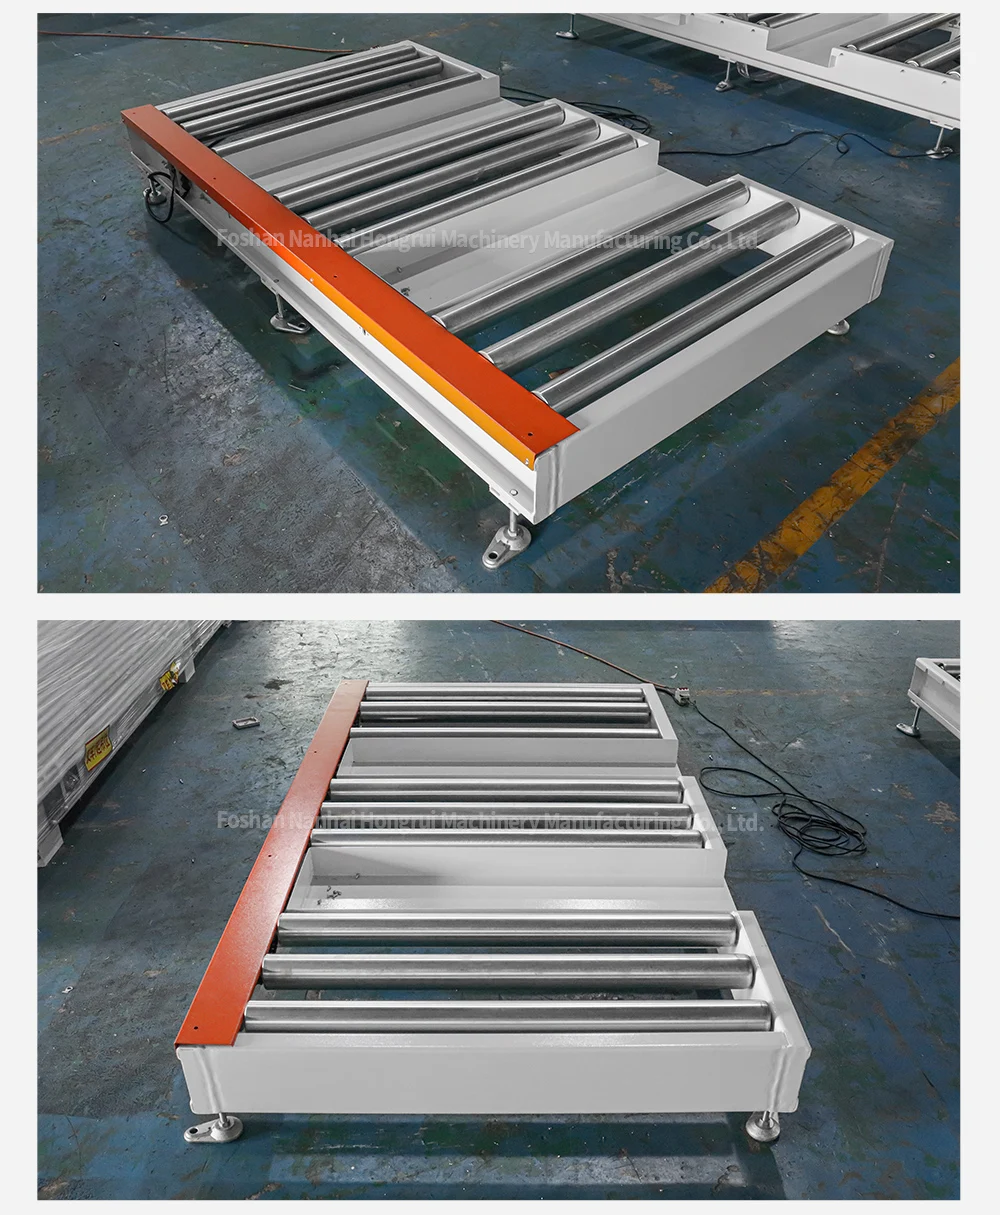 Versatile Forklift Roller Conveyors: Efficient Handling and Transport Solutions supplier